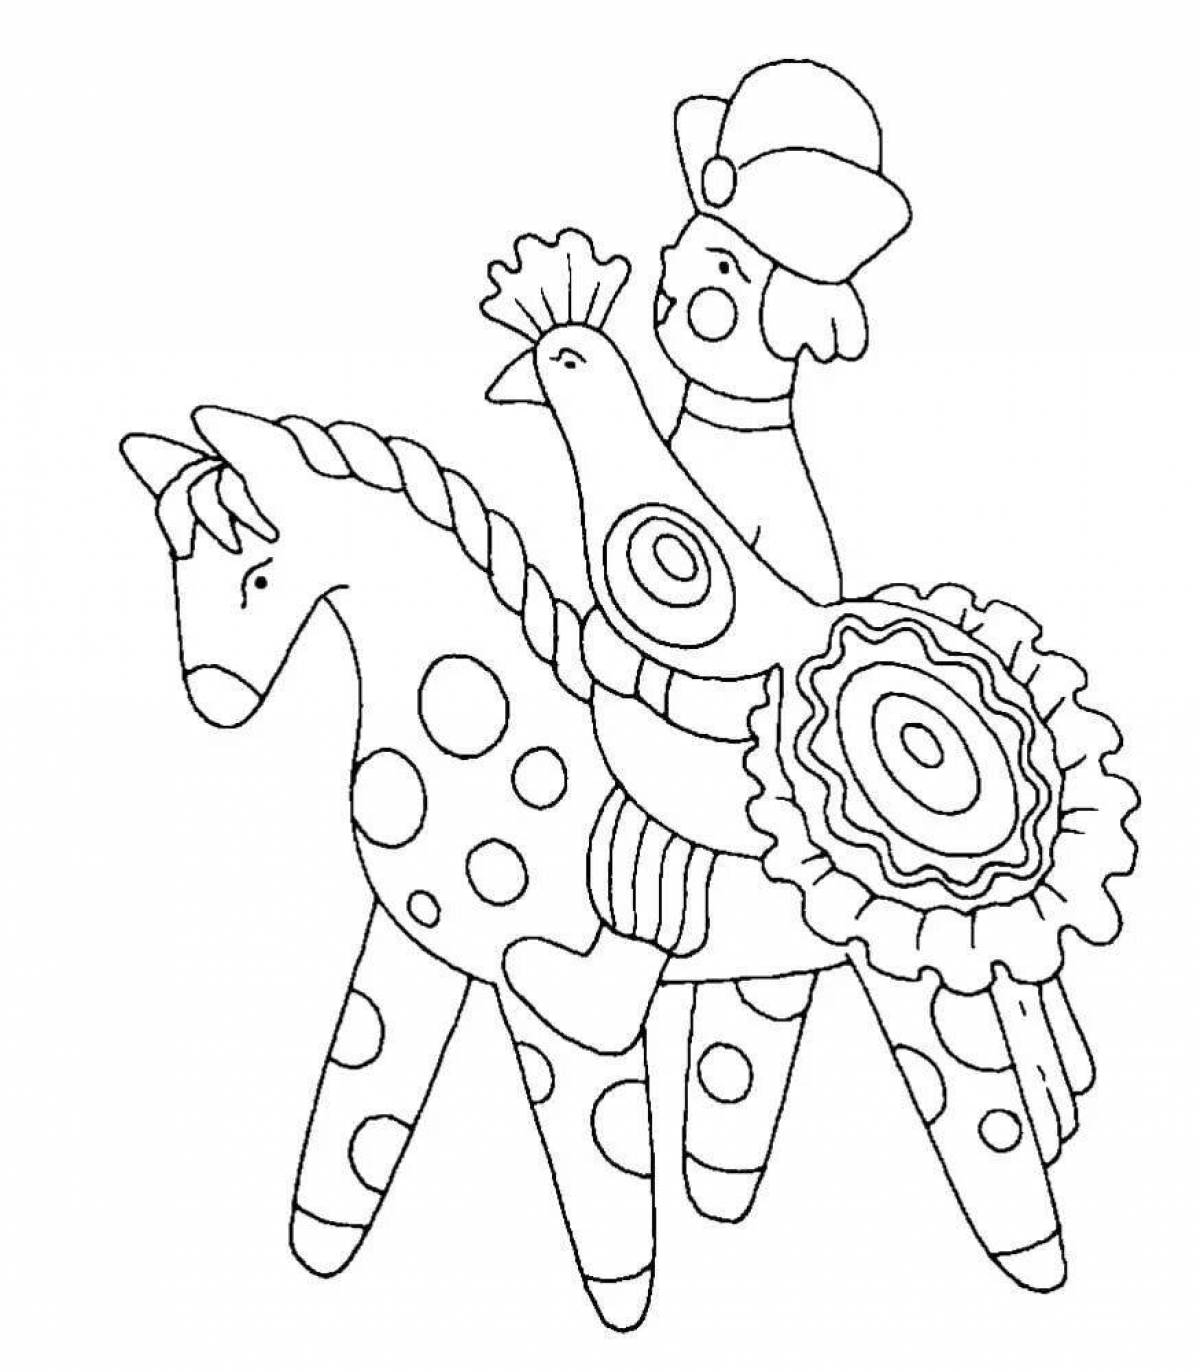 Раскраска радостная лошадка для дымковской игрушки